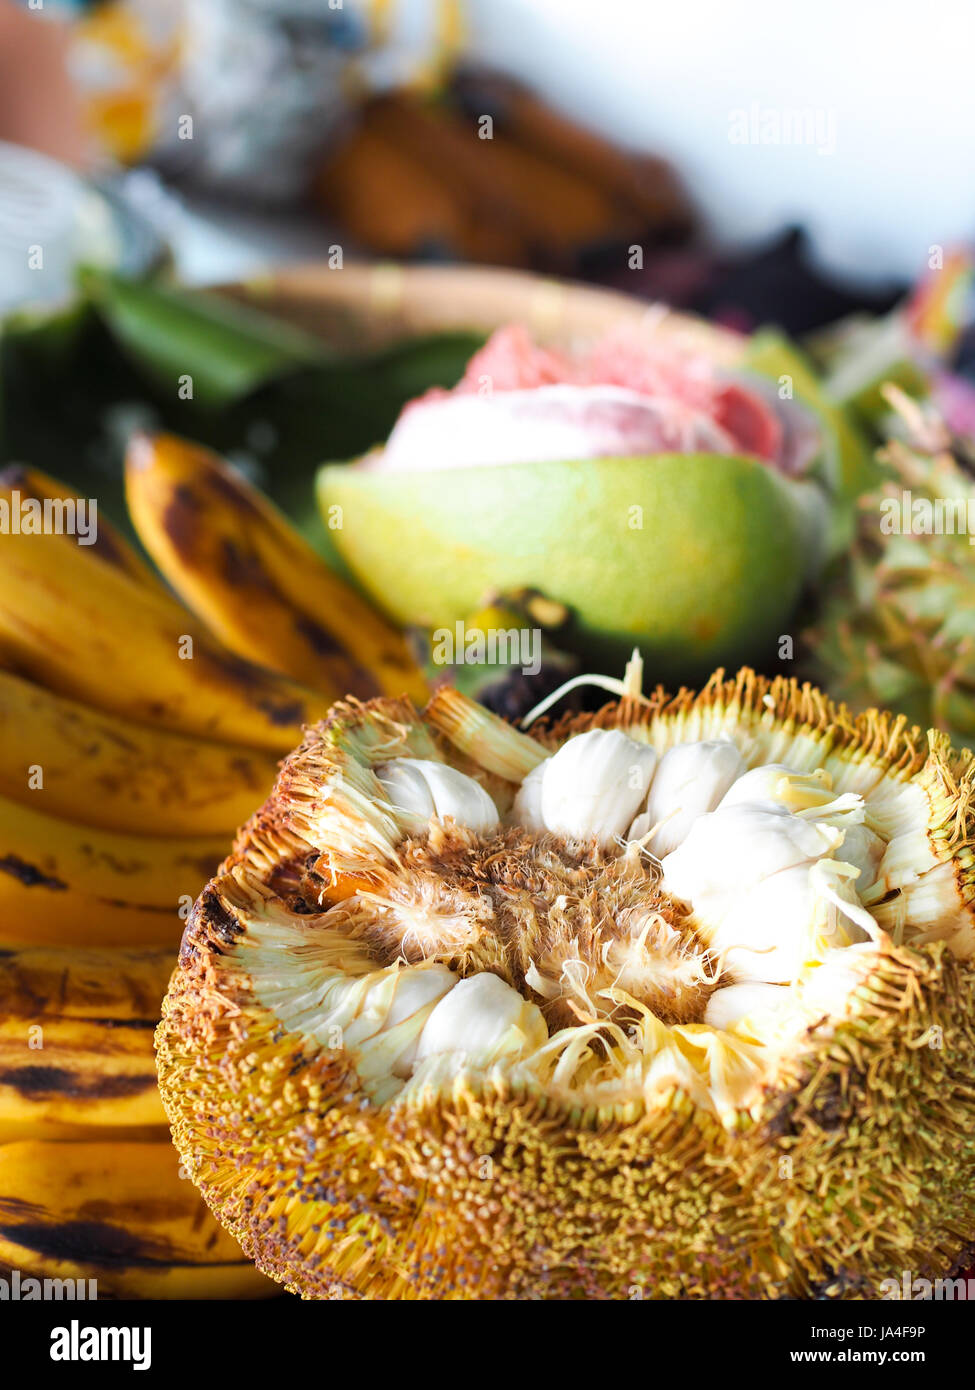 Un fruit tropical, Marang trouvés à Davao, Philippines, qui ressemble à un Jaque et goûte comme un croisement entre corossol et mangoustan. Banque D'Images